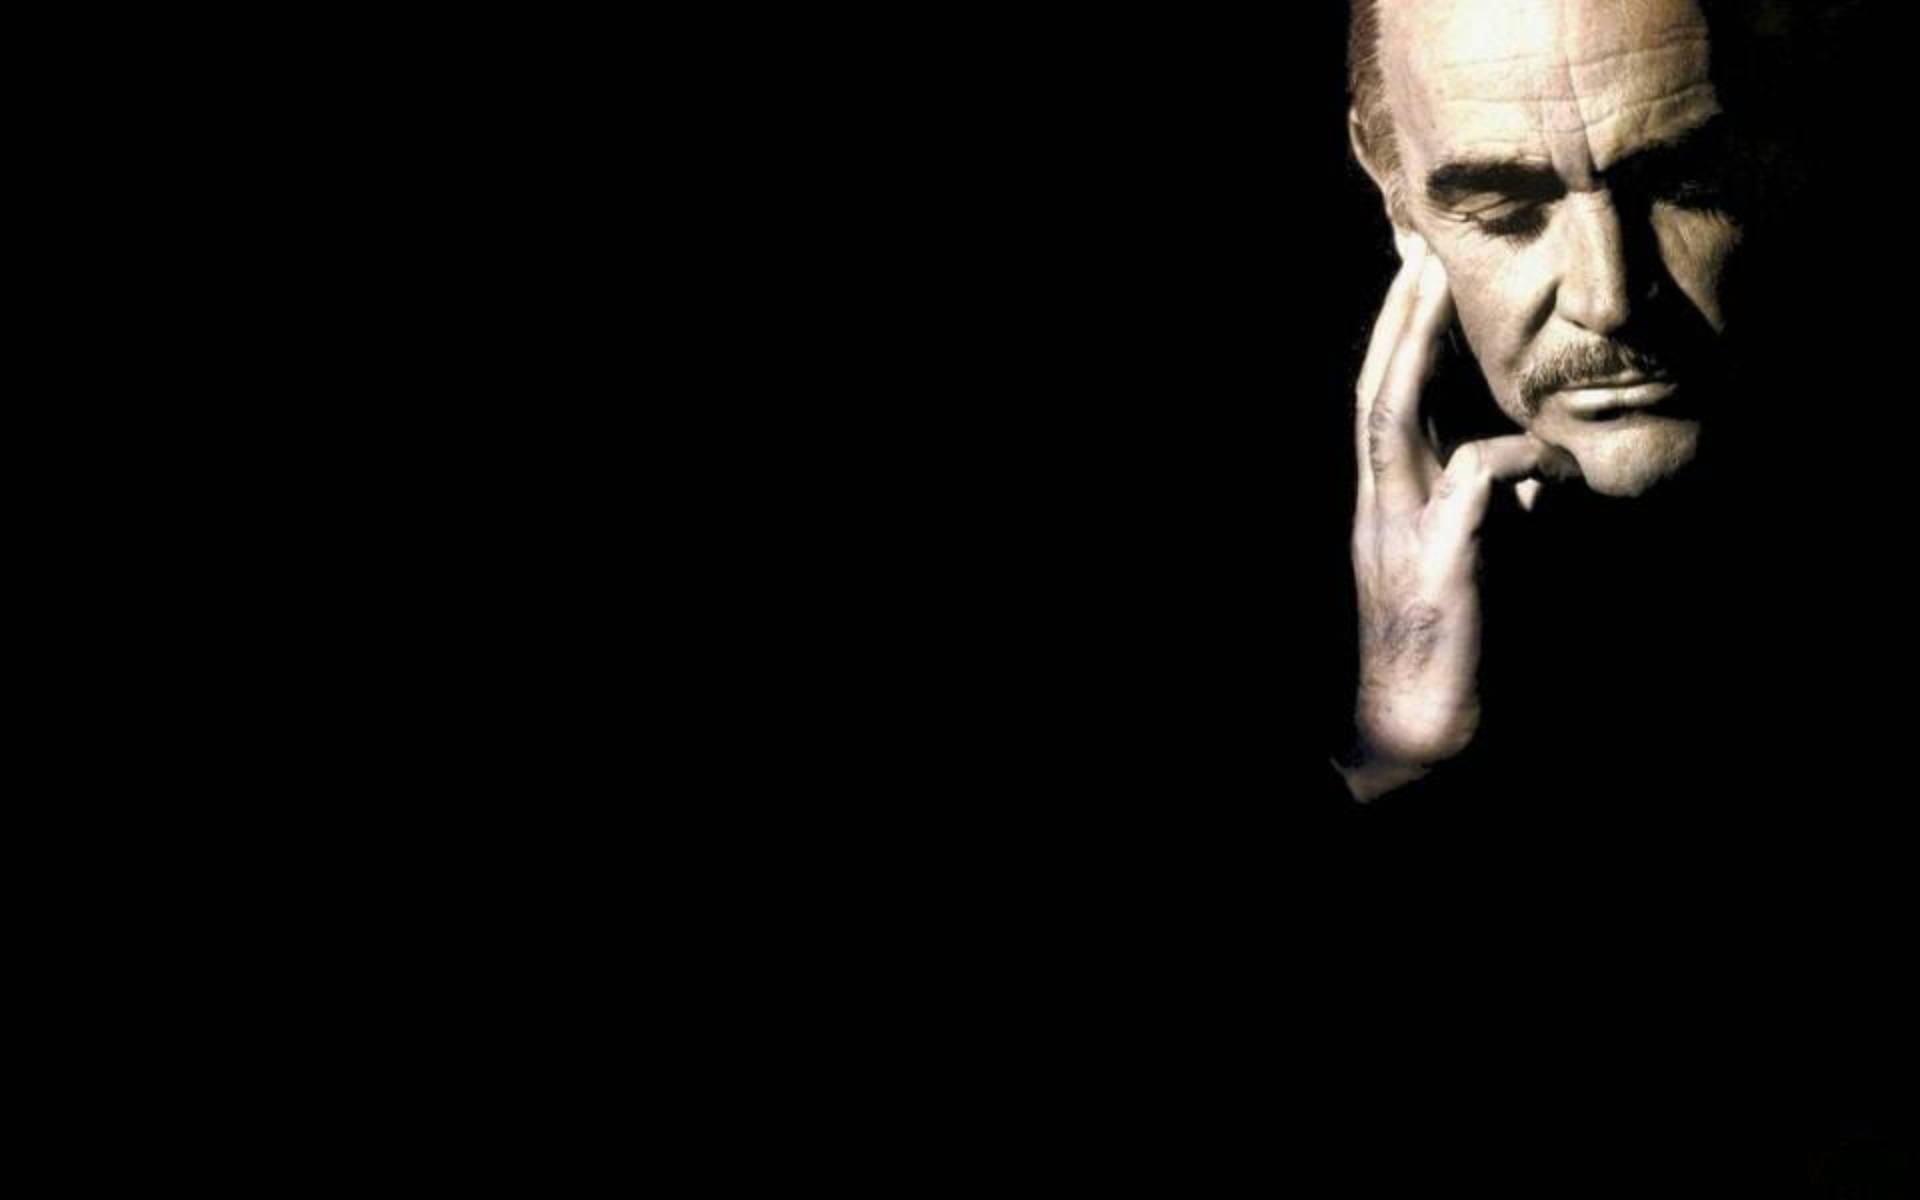 Contemplative Actor Sean Connery Wallpaper